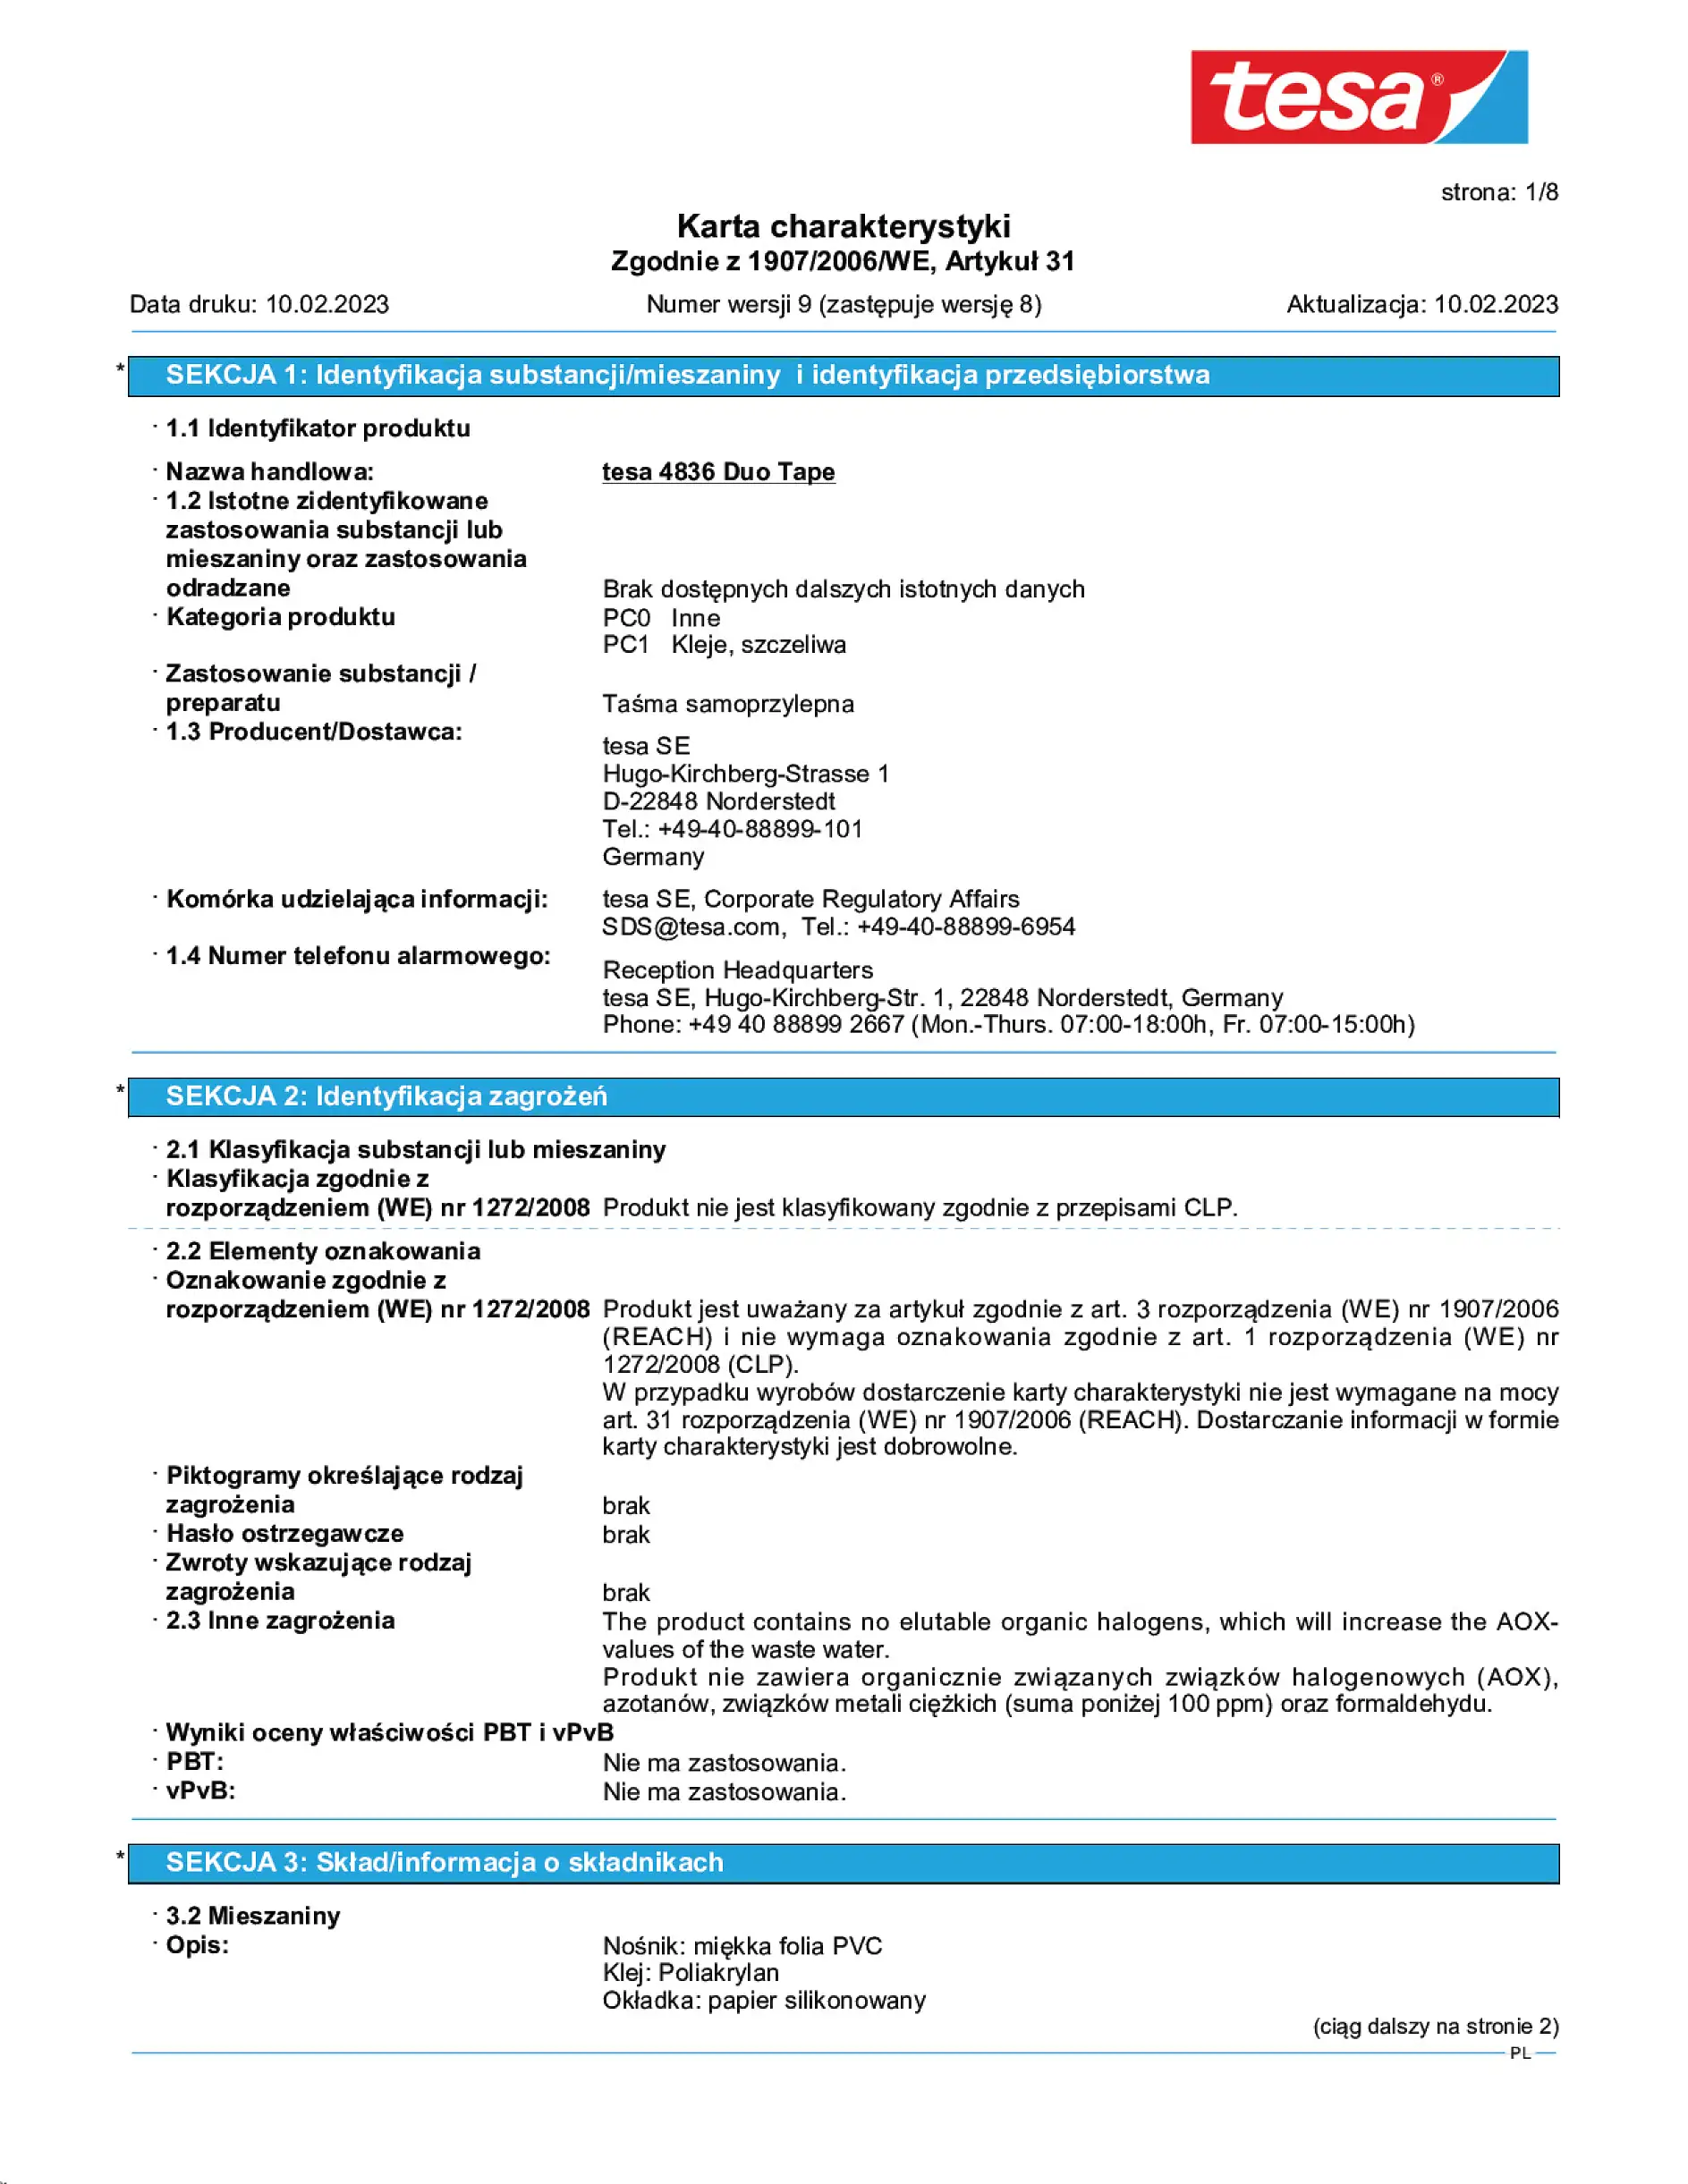 Safety data sheet_tesa® Professional 04836_pl-PL_v9